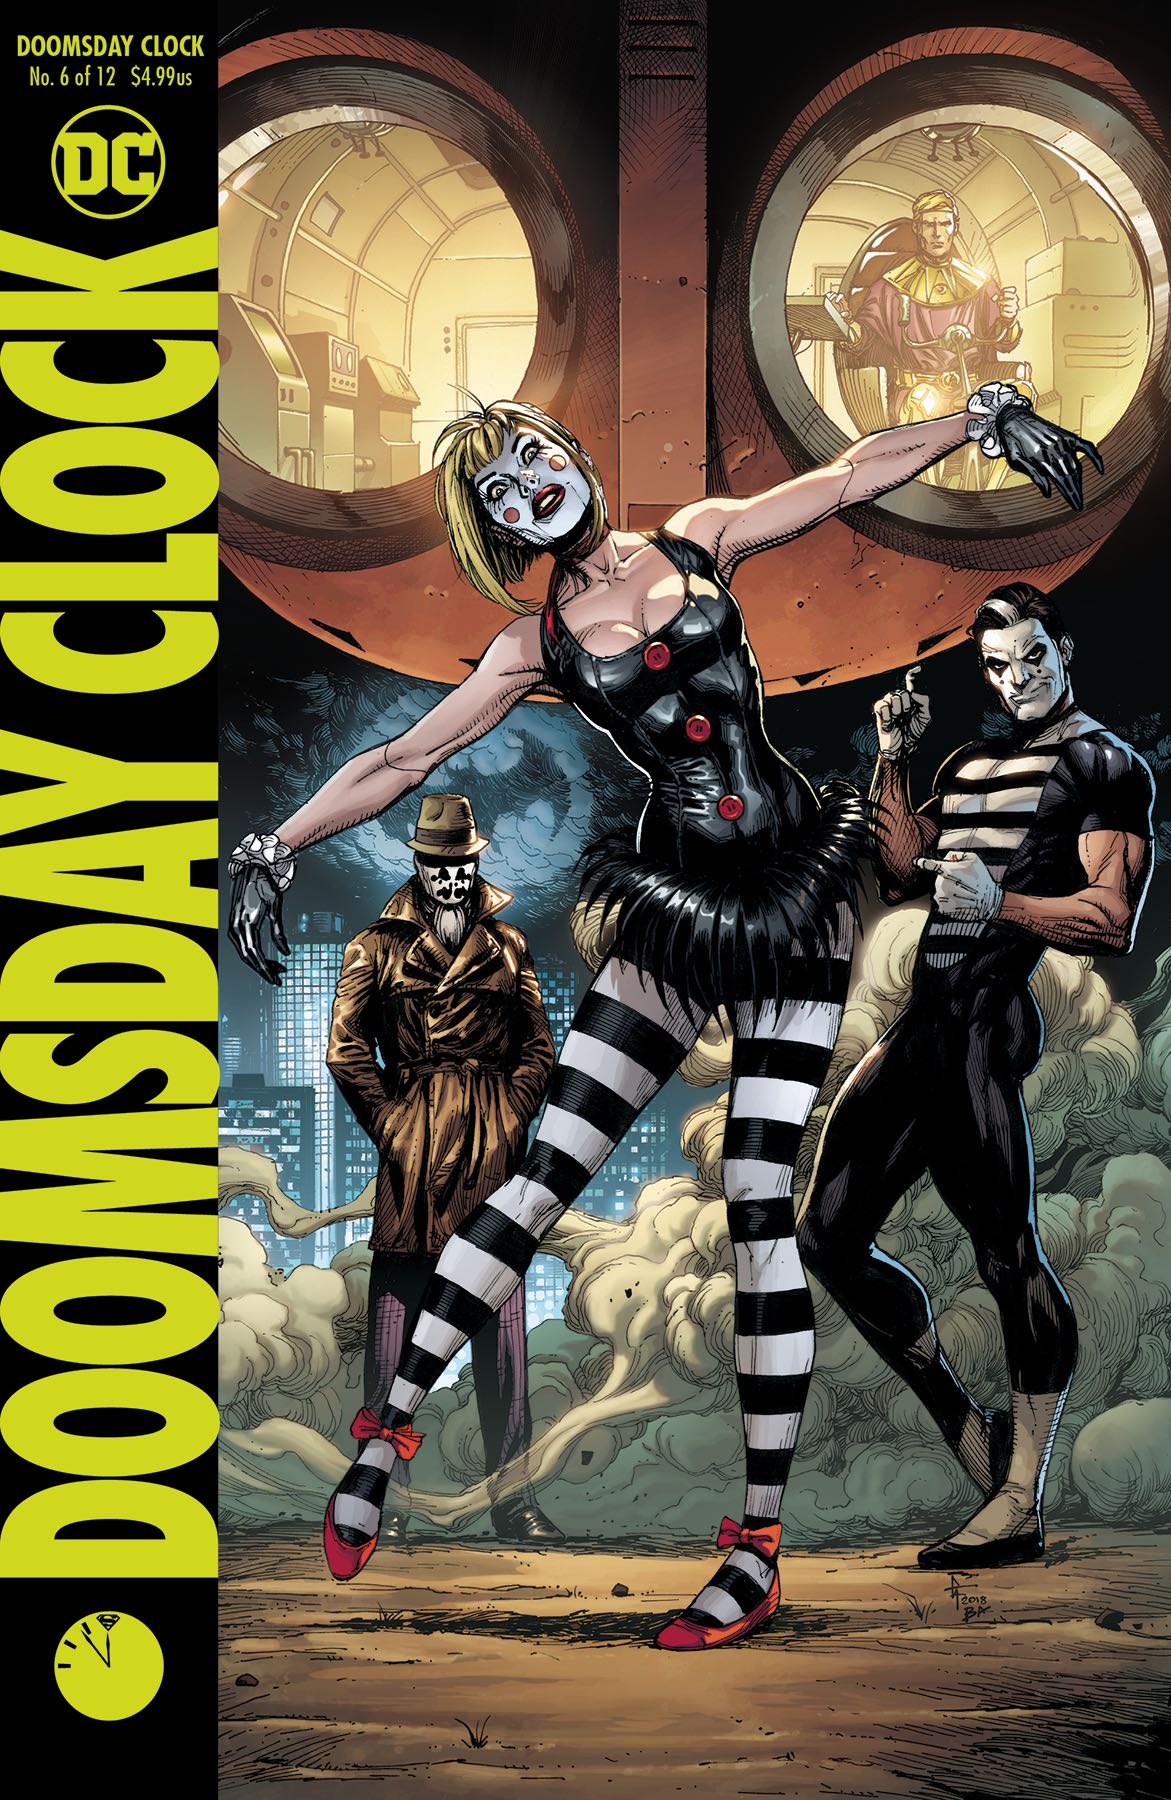 Doomsday Clock #6 (Variant Cover) | Fresh Comics1171 x 1800